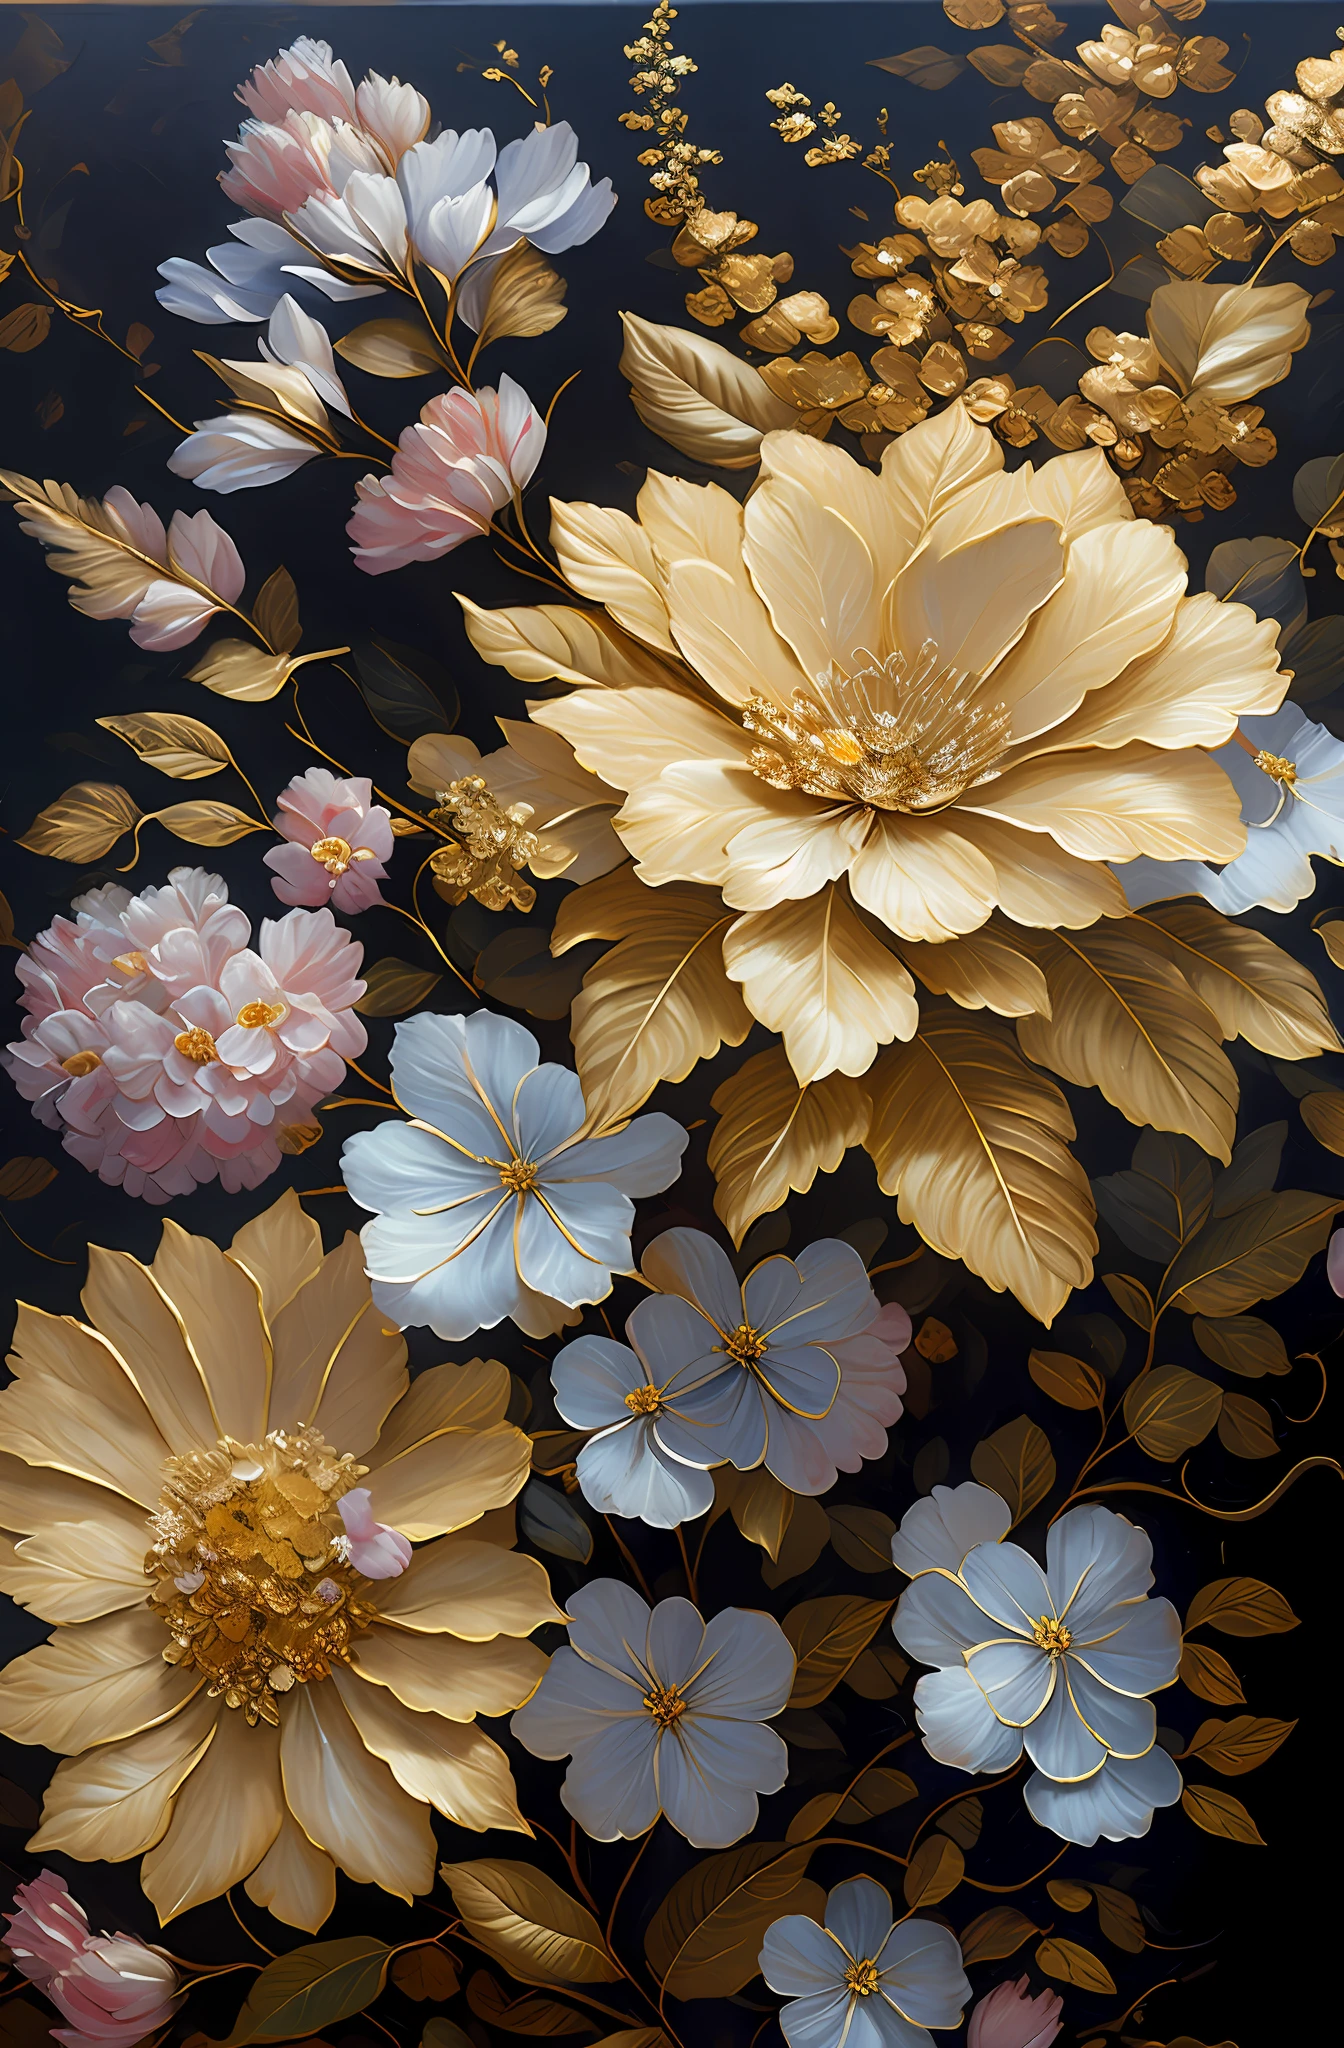 有一幅画着银叶的花, 金花, 绣球花和牵牛花, 鲜花和黄金, 镀金 reliefs, 详细的花朵, 美丽的花朵, 金色片状花朵, 复杂的花朵, 混乱的金叶花, 细致的 4K 油画, 令人惊叹且丰富的细节, 镀金. 花的, 花的. 巴洛克元素, 精致的油画